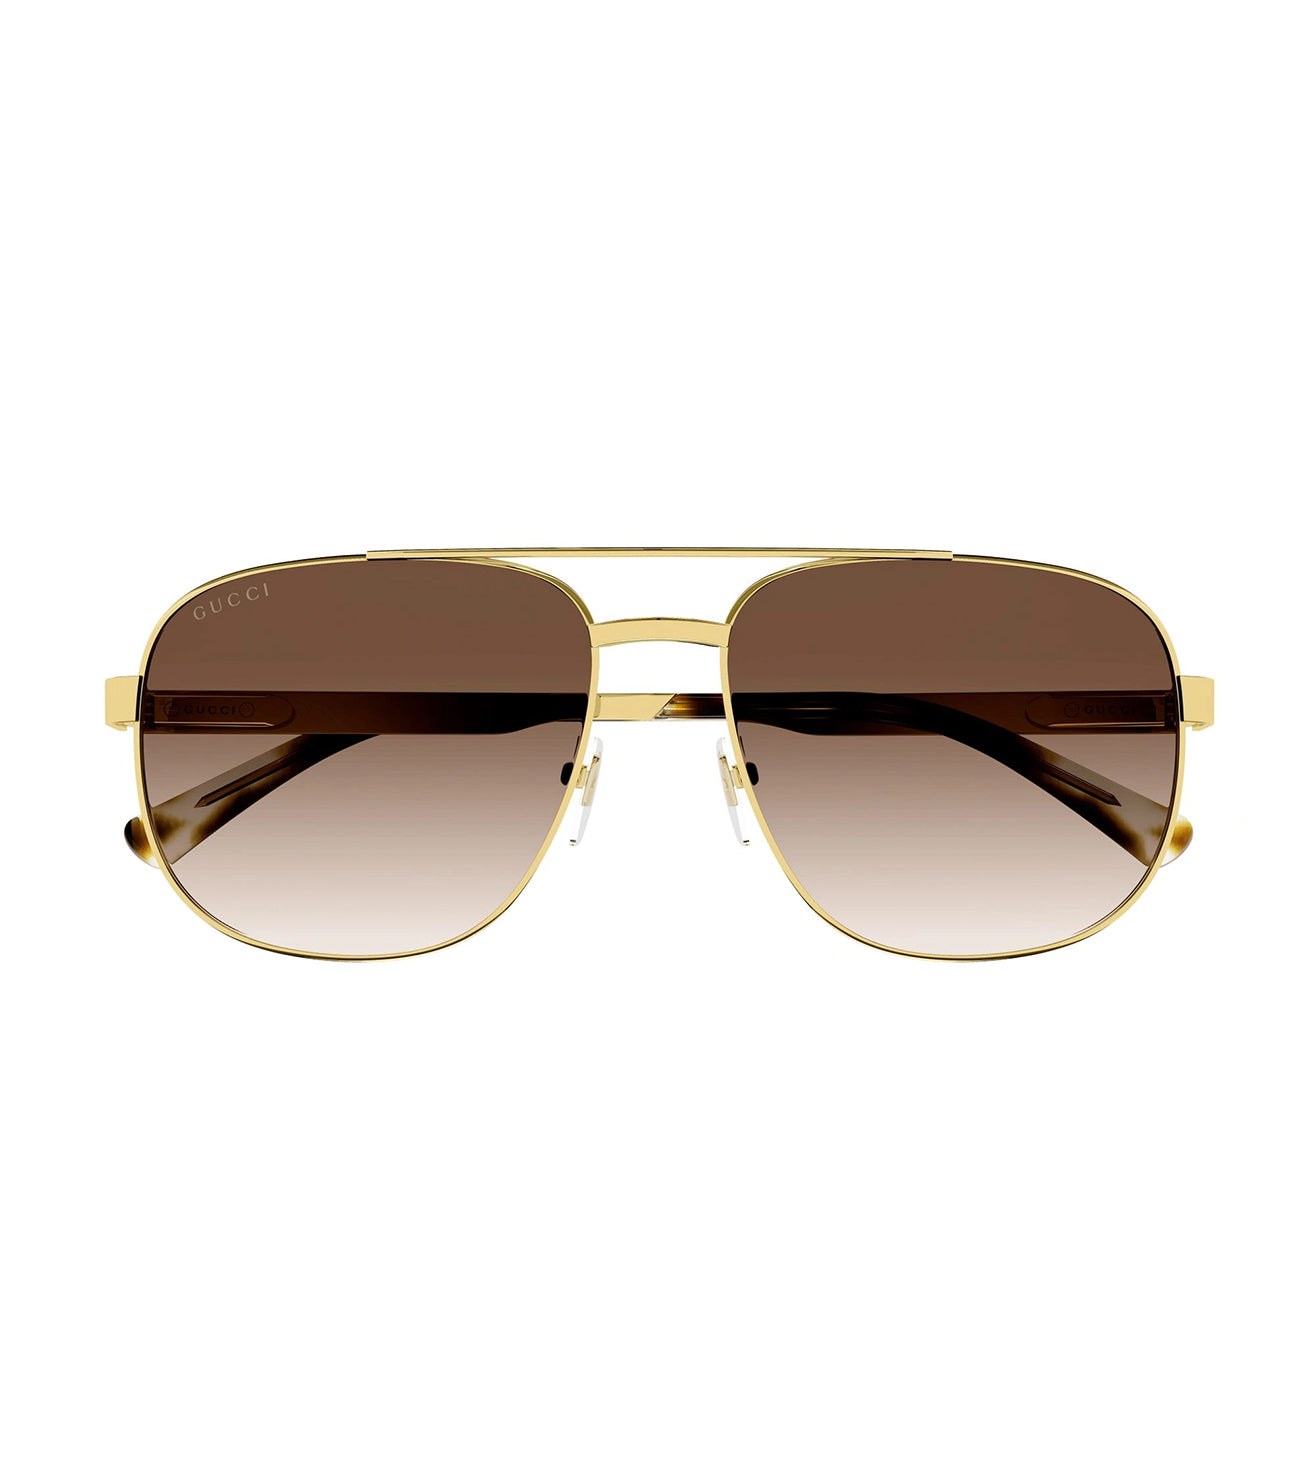 Gucci Men's Brown Aviator Sunglasses